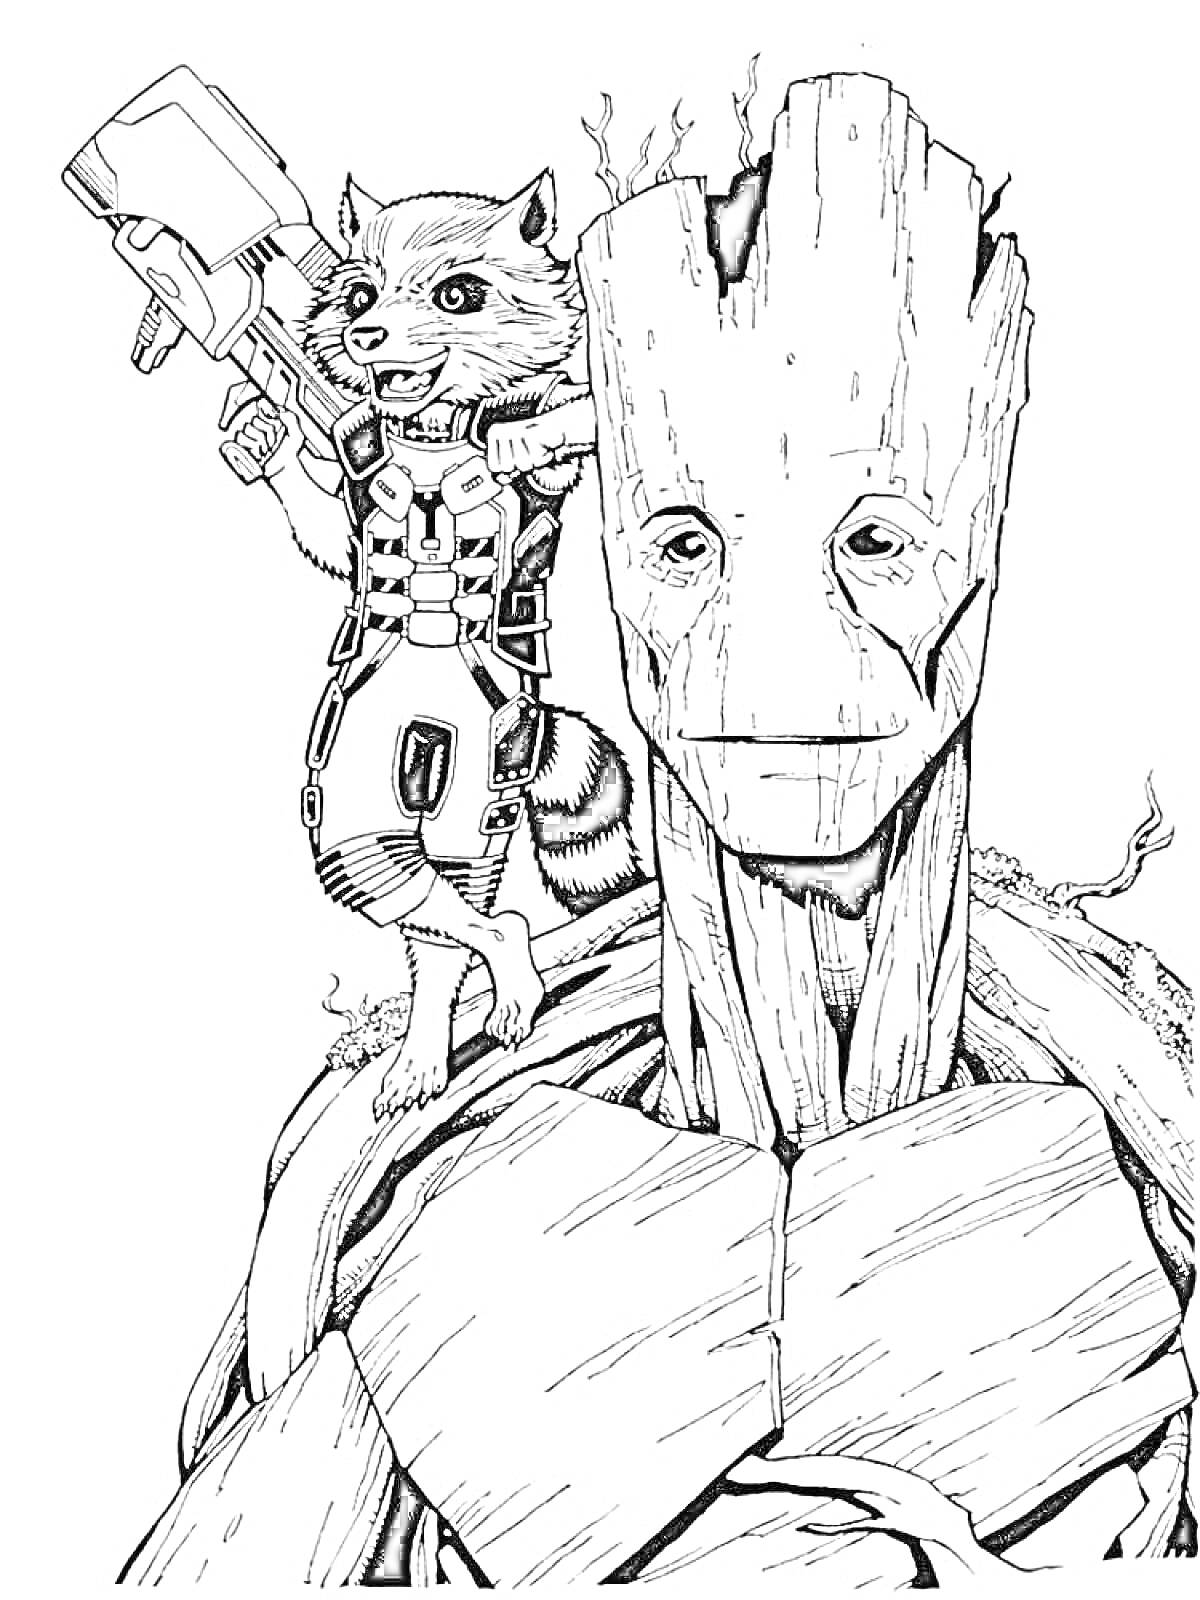 Раскраска Енот с оружием на плечах дерева-оборотня